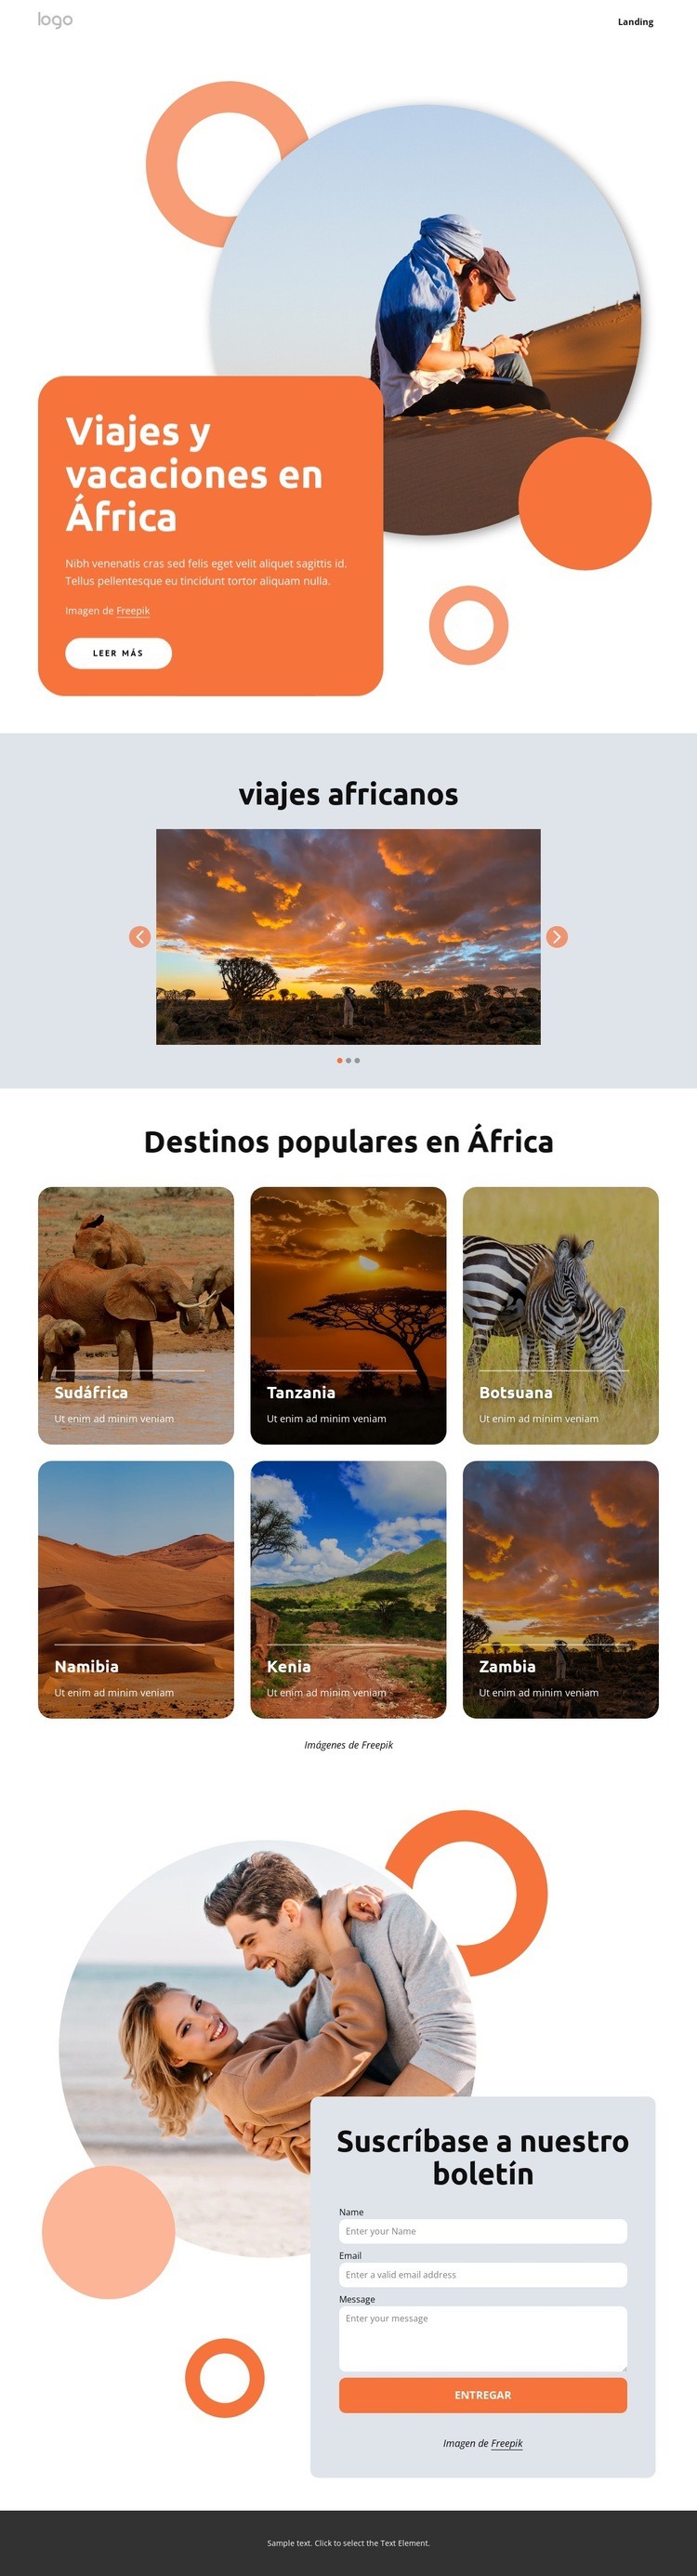 Vacaciones africanas hechas a mano Creador de sitios web HTML